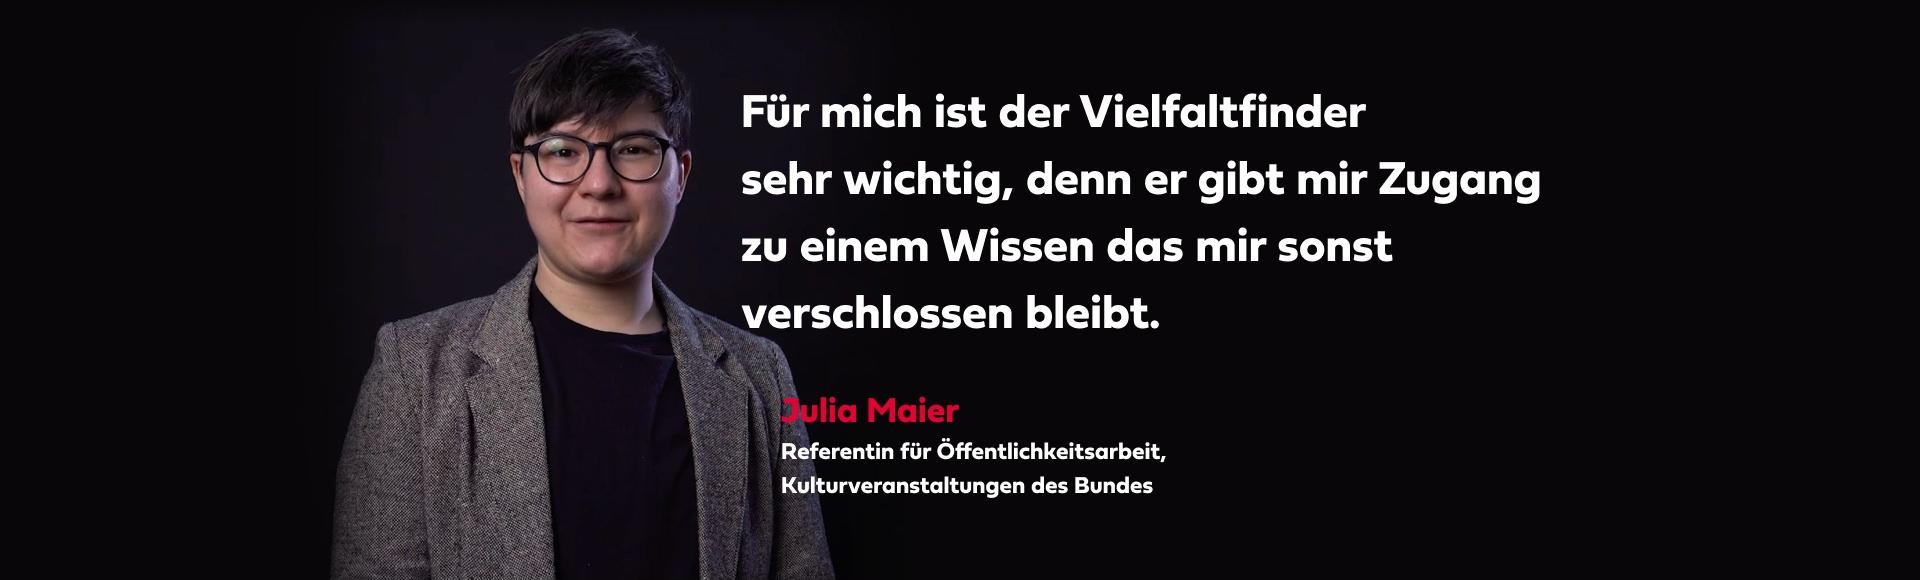 Statemant zum Vielfaltfinder von Julia Maier